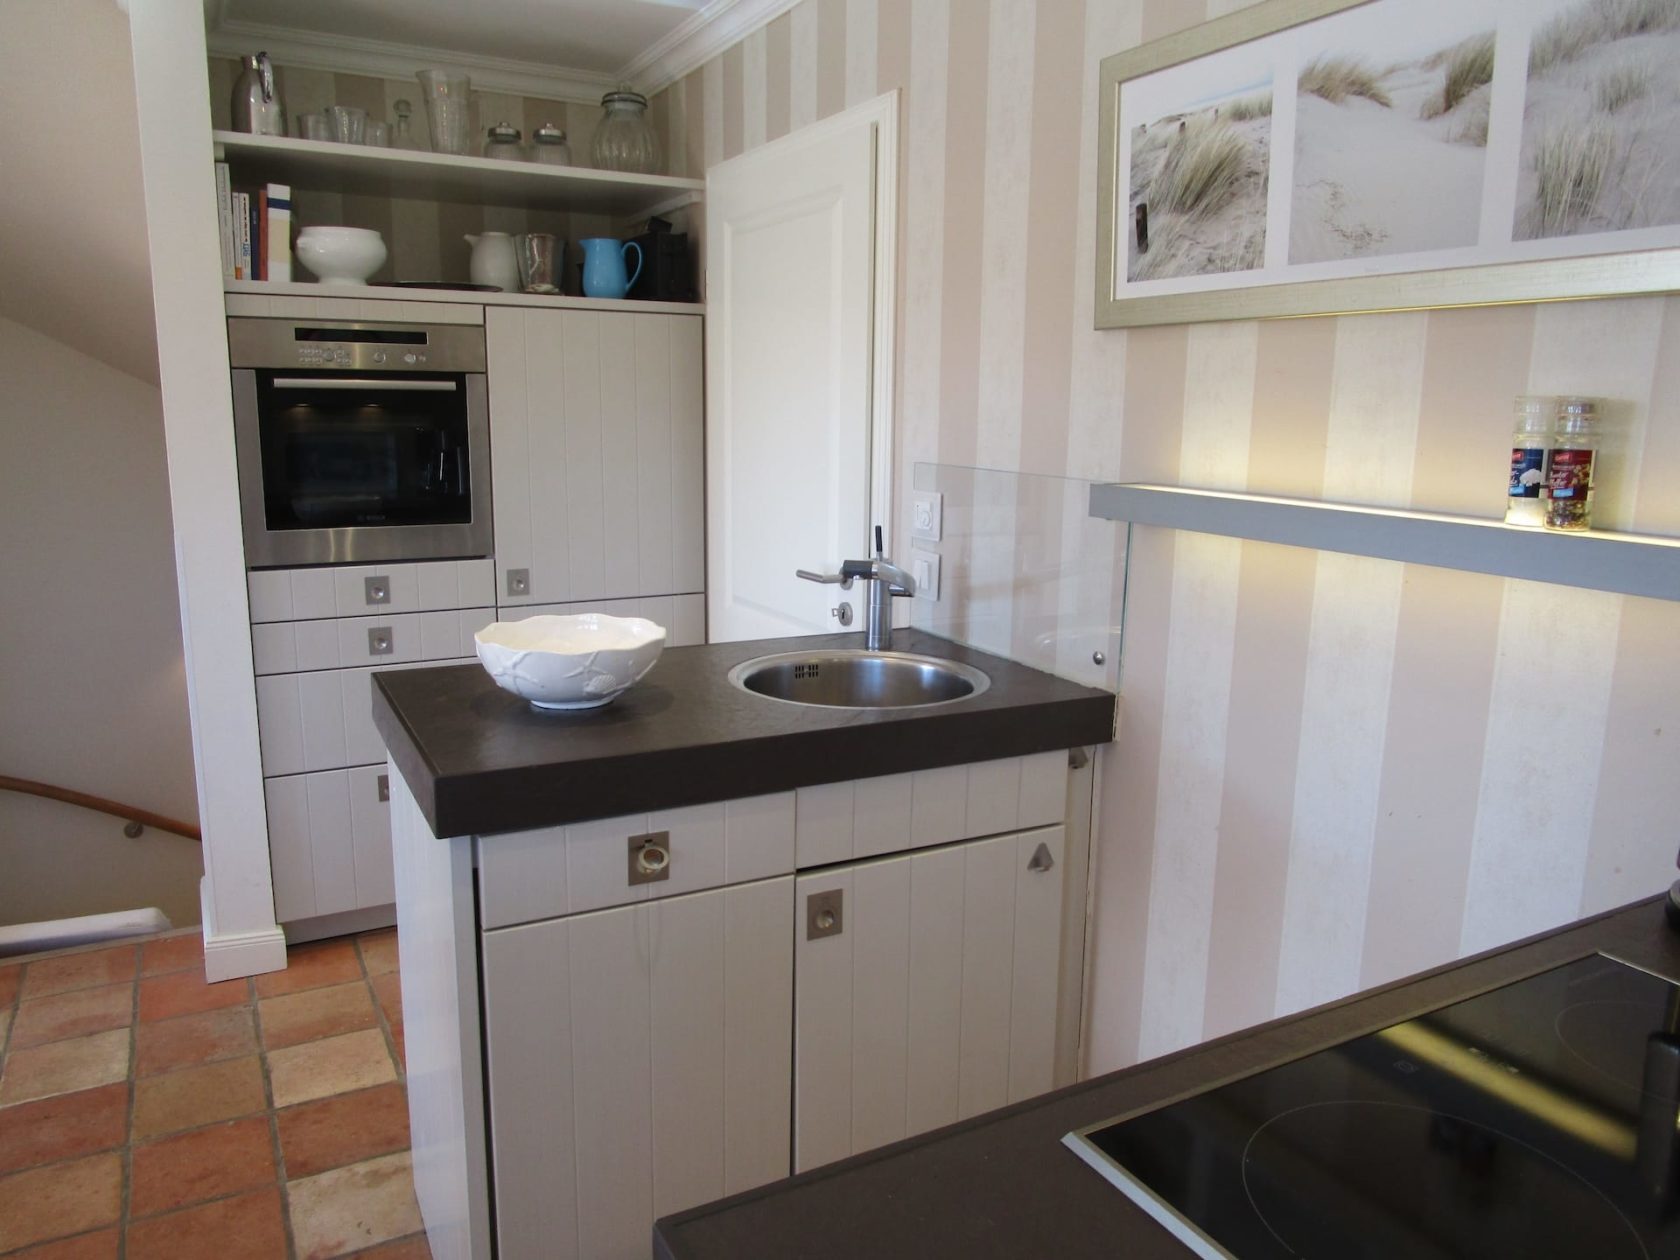 Offene Wohnküche mit Arbeitsinsel im Ferienhaus "Hausteil Seaside IV" in Rantum auf Sylt